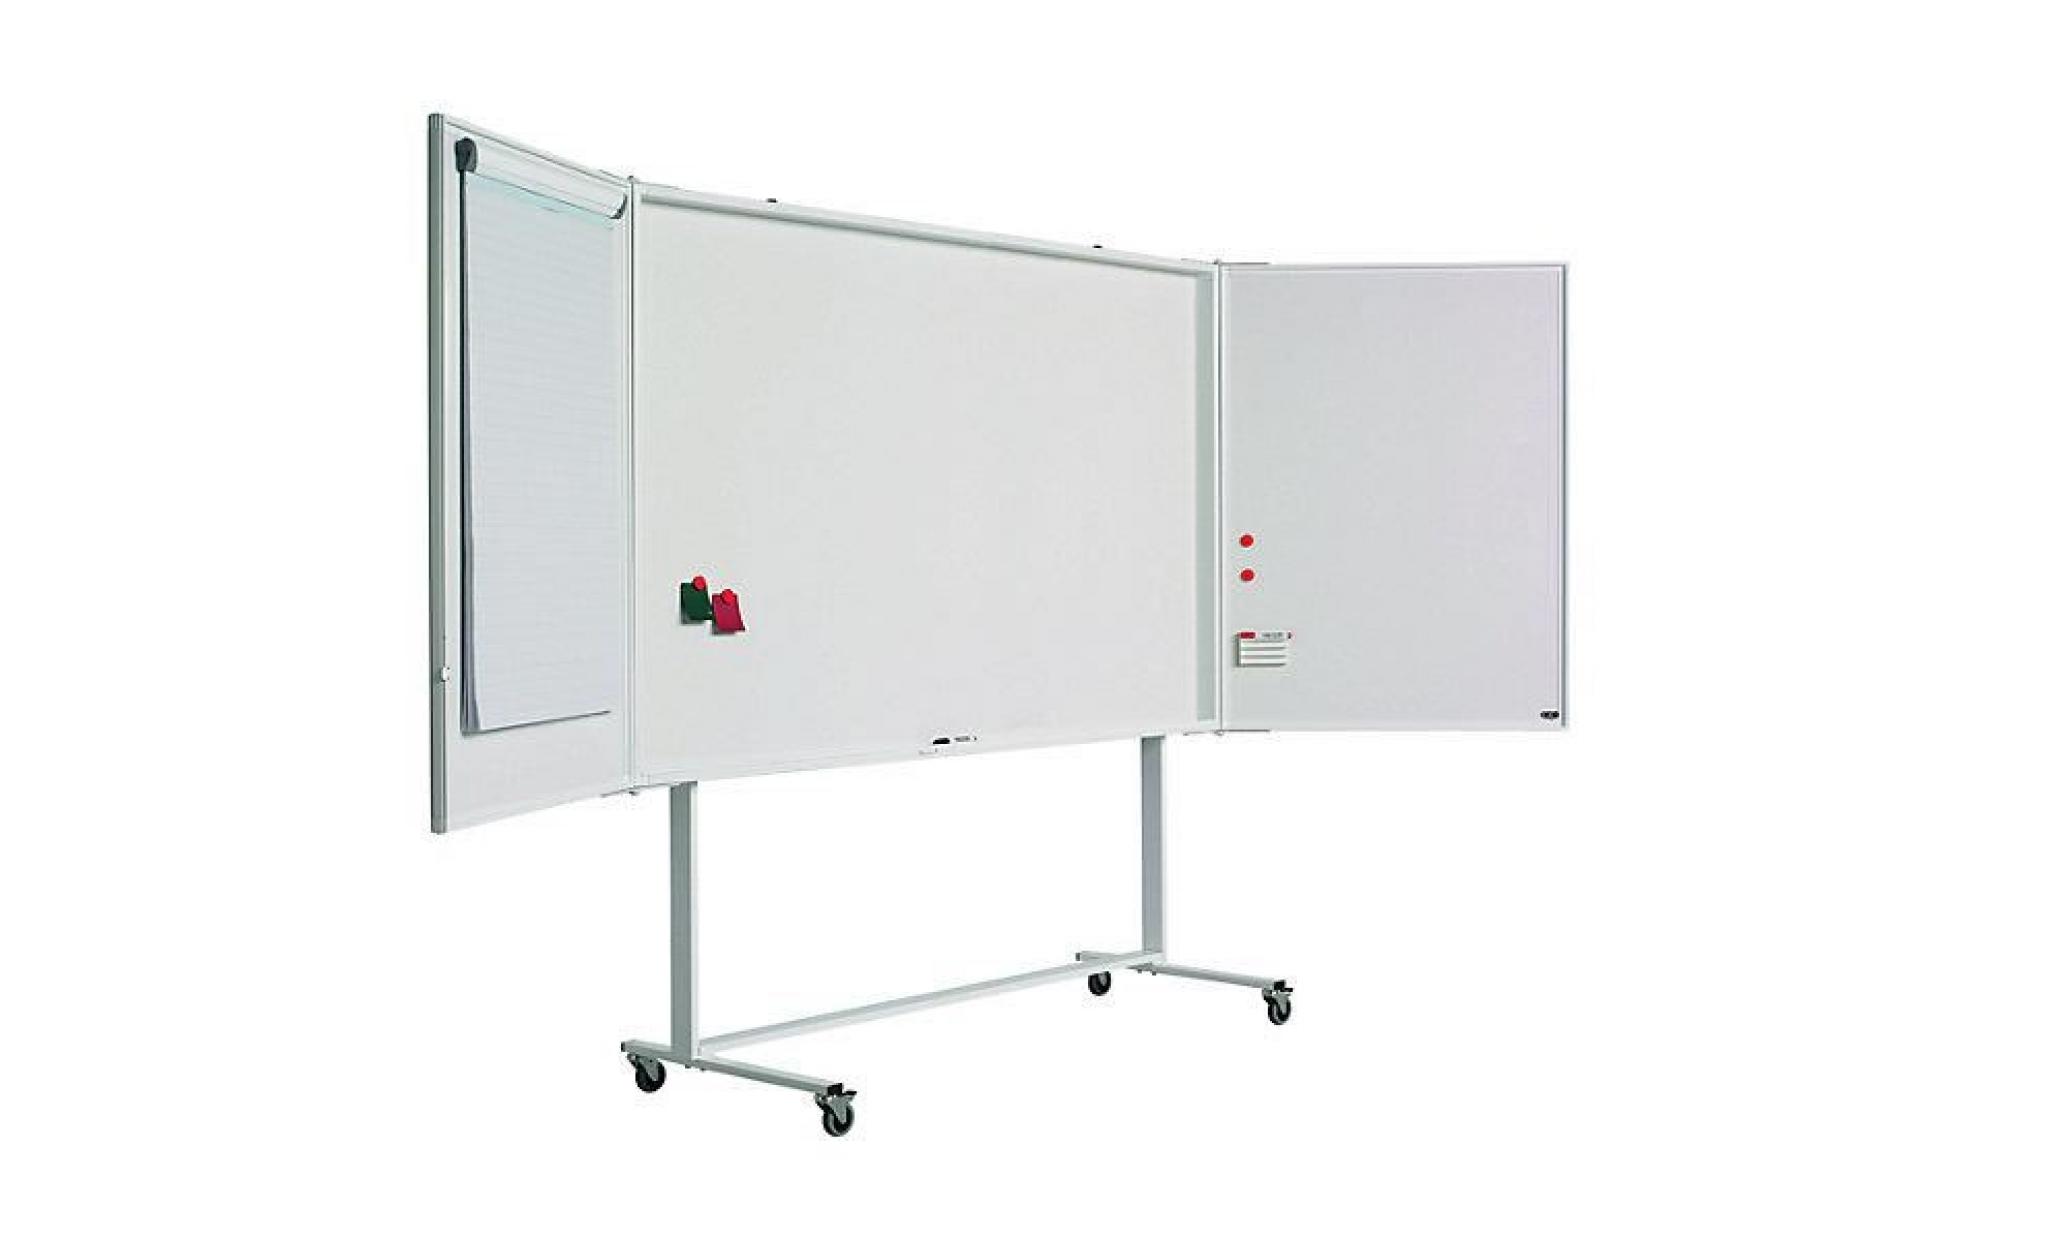 armoire de présentation   tableau blanc avec surface pour projection pour format écran 16:10   armoire armoire murale armoires